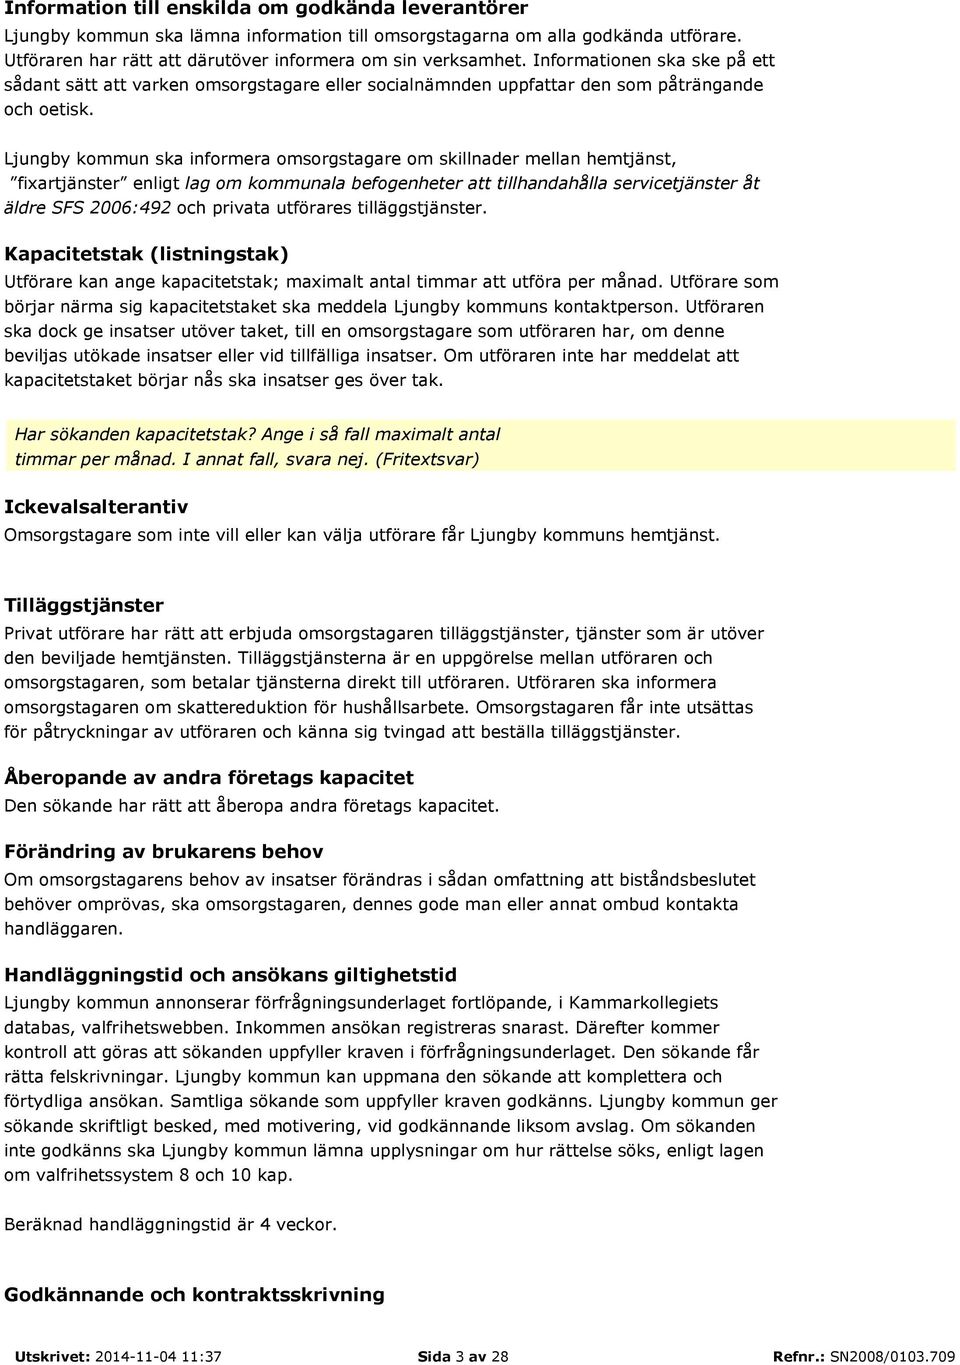 Ljungby kommun ska informera omsorgstagare om skillnader mellan hemtjänst, fixartjänster enligt lag om kommunala befogenheter att tillhandahålla servicetjänster åt äldre SFS 2006:492 och privata